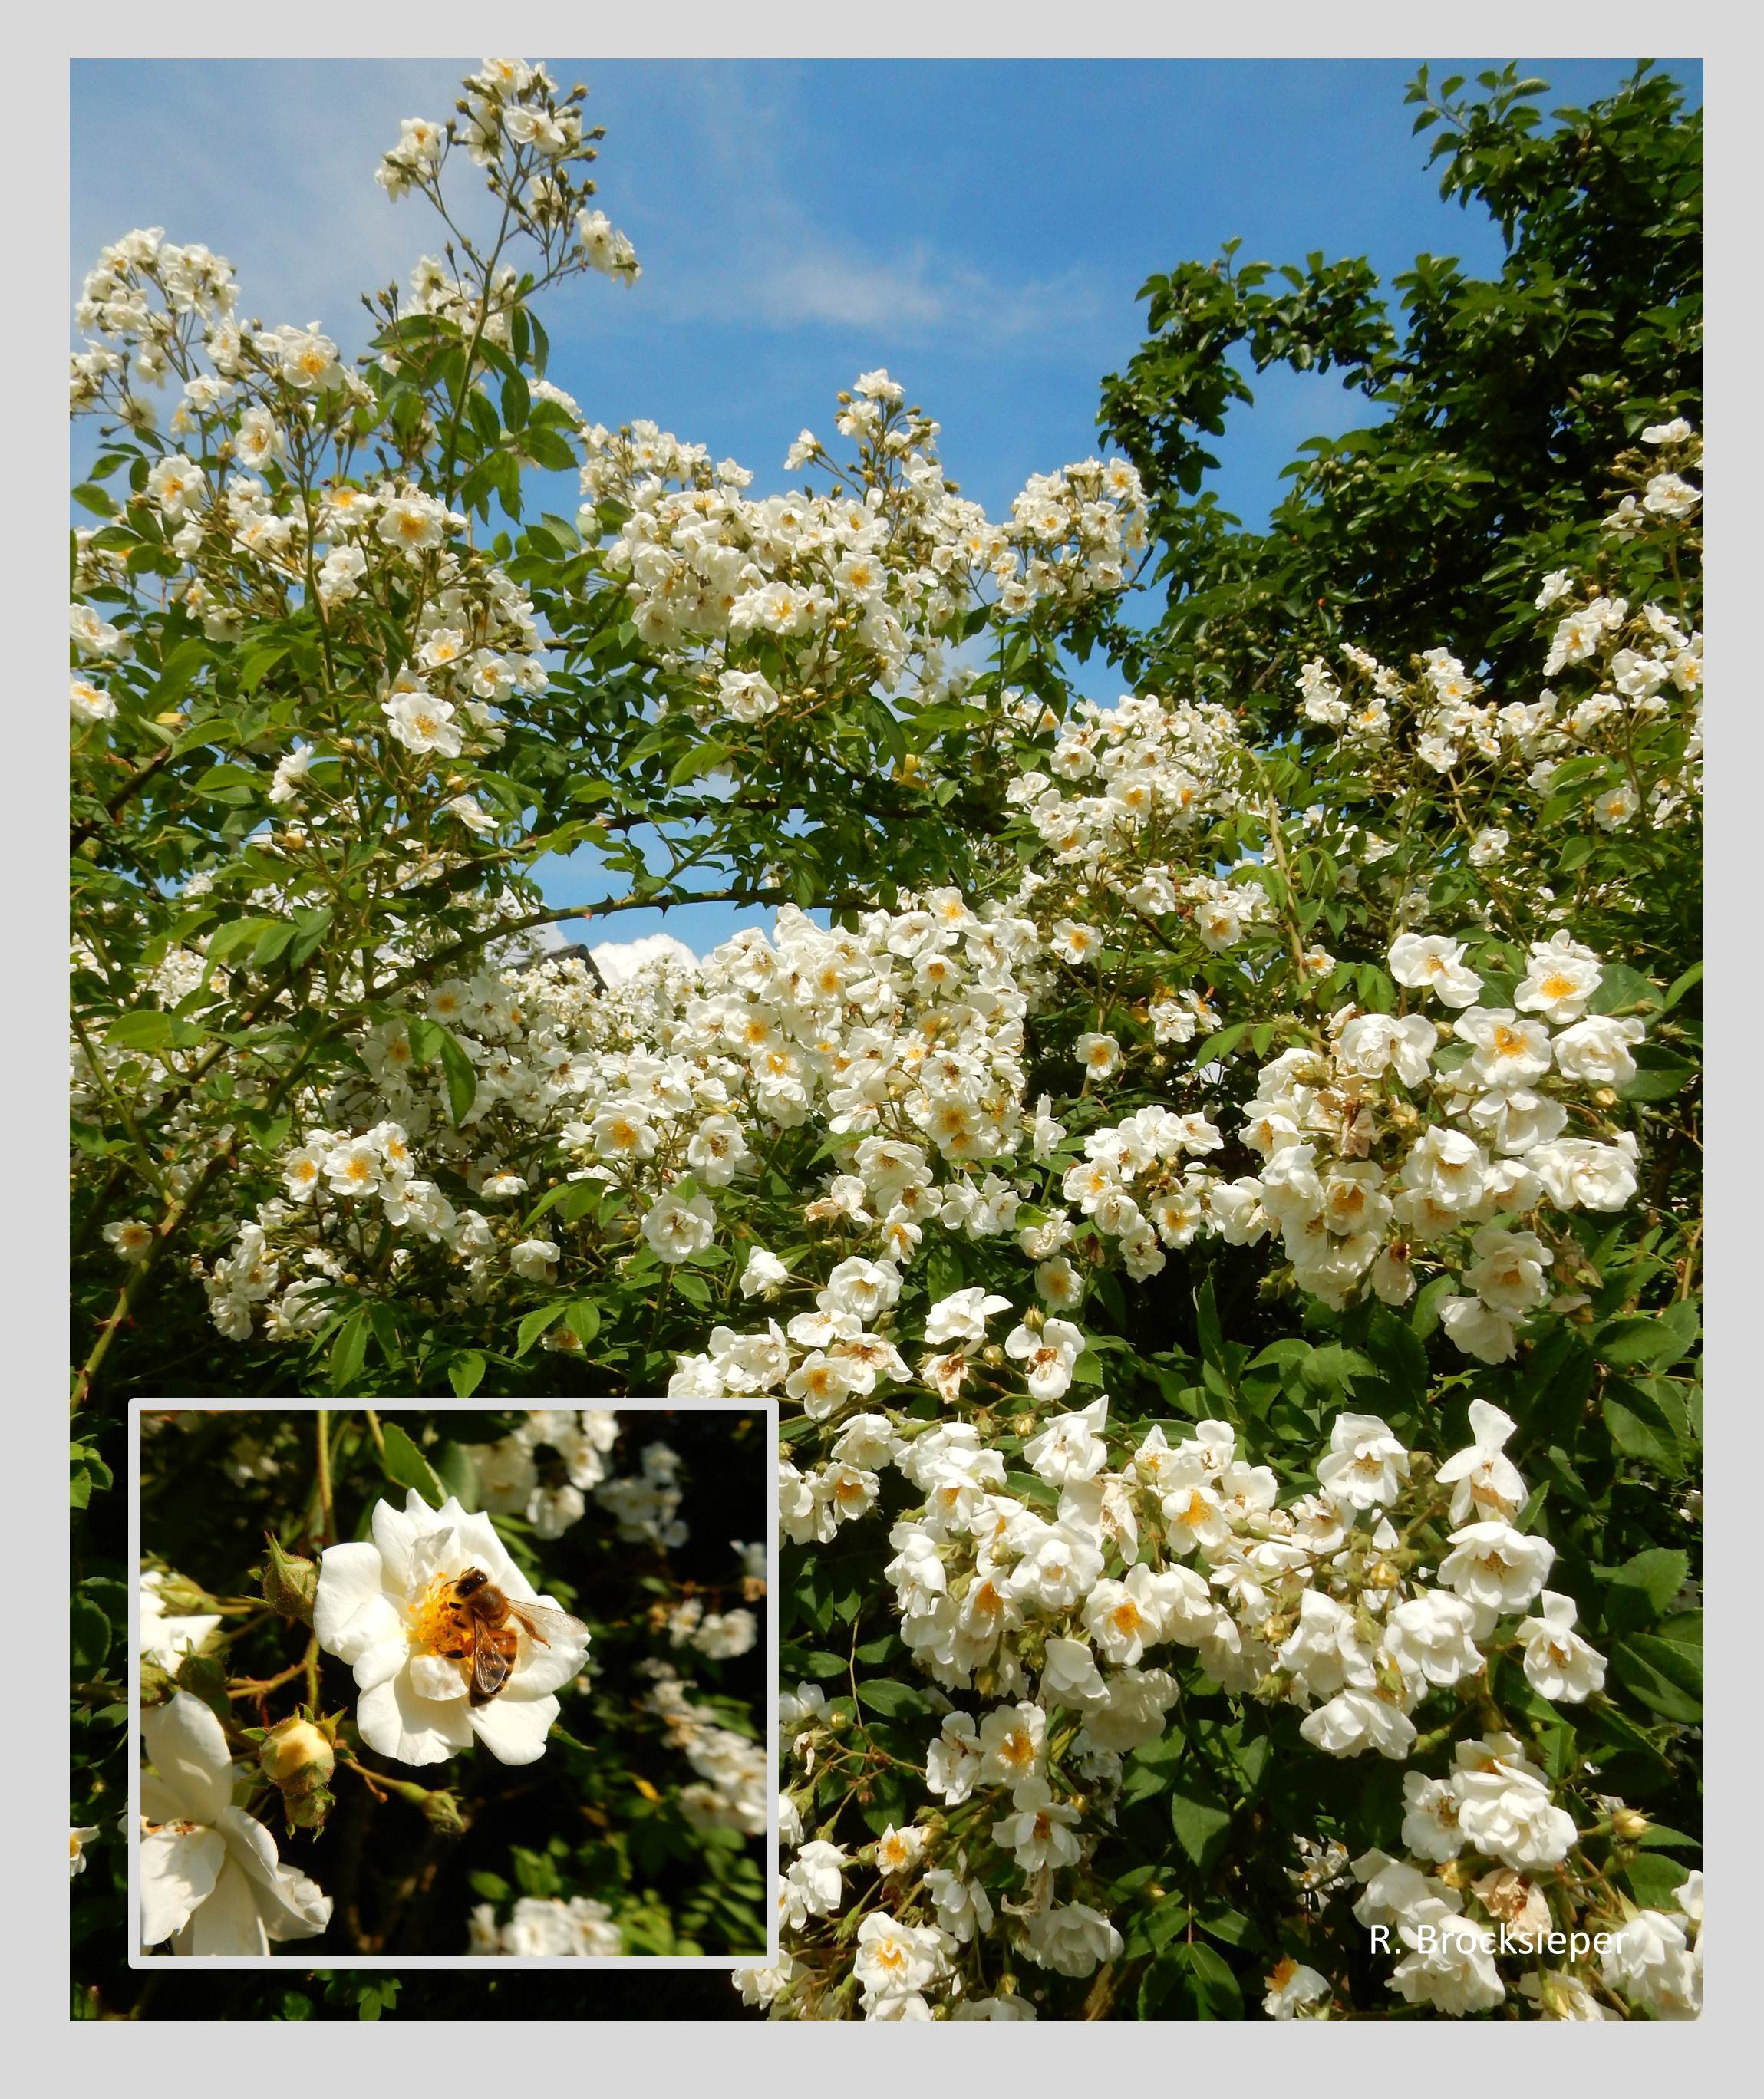 Heckenrosenarten und ungefüllte Rosen sorgen nach der Obstbaumblüte dafür, dass der Tisch auch weiterhin für Insekten, v. a. Bienen und Hummeln, gedeckt bleibt. Die weiße Ramblerrose, Sorte Seagull beispielsweise, ist während der Blüte ein duftendes Bienenparadies.